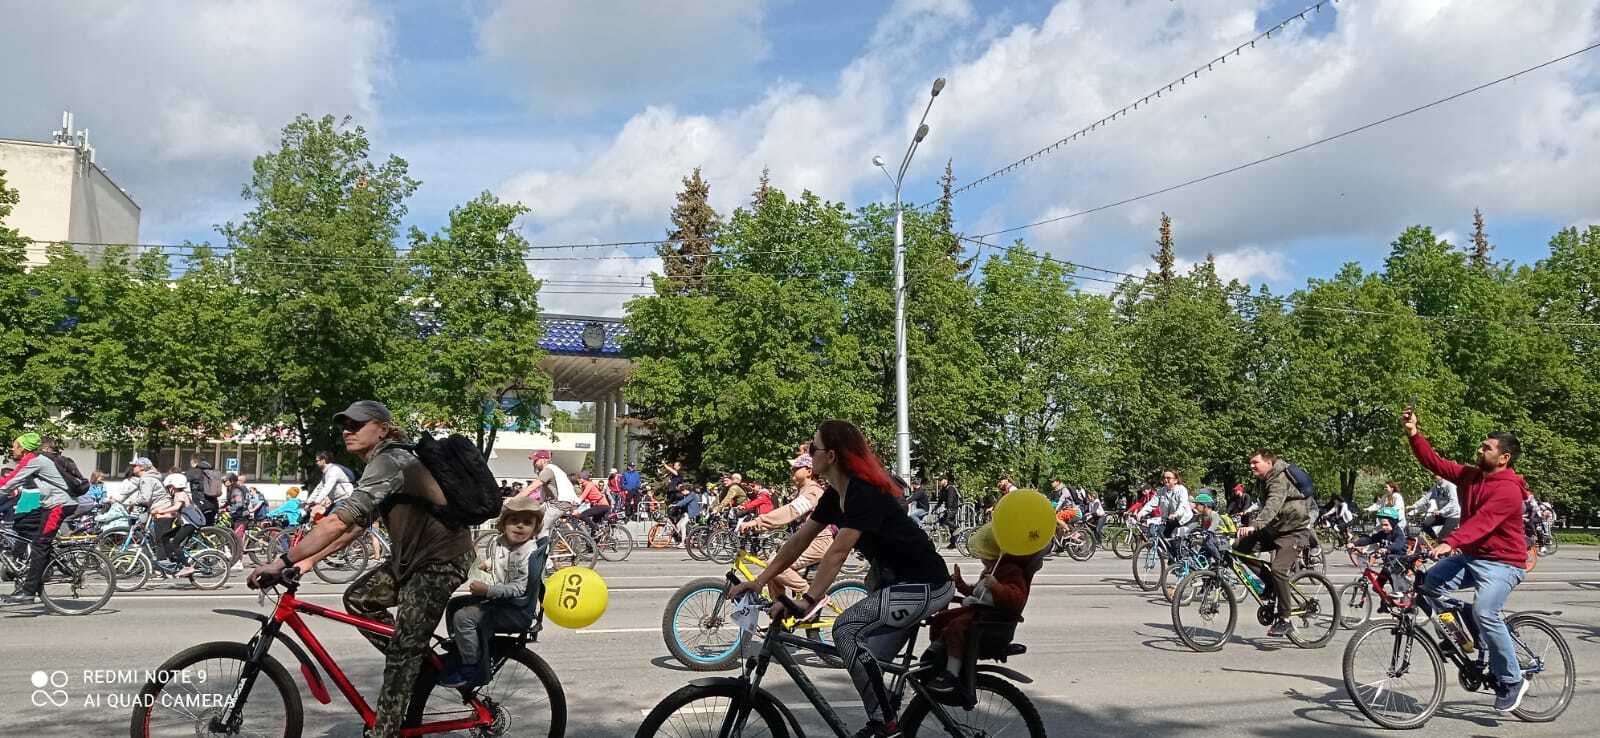 Өфөлә - "1000 велосипедсы көнө"